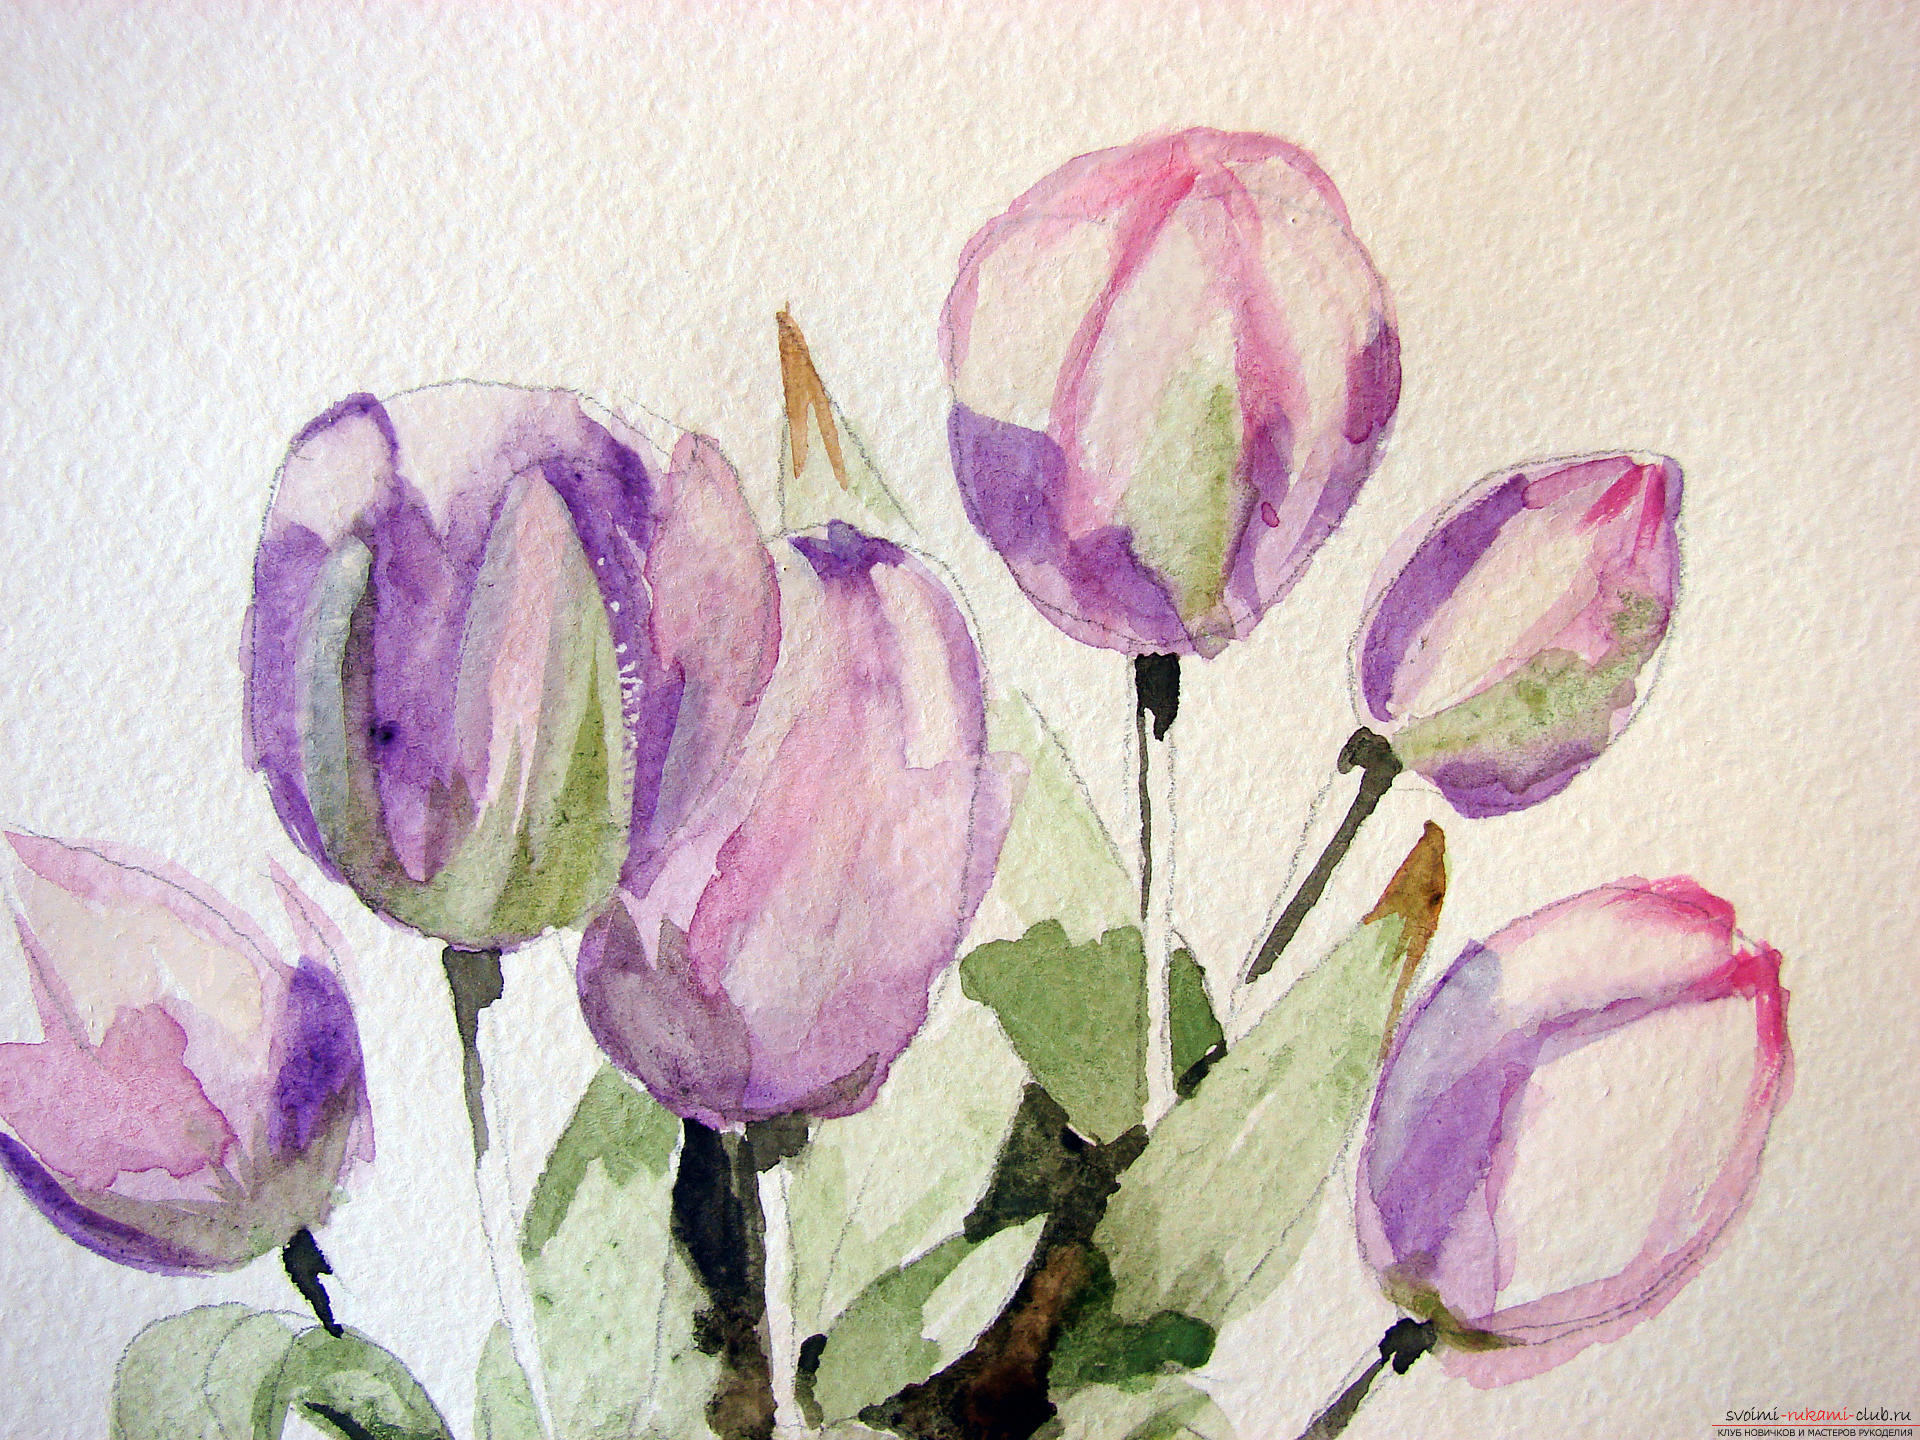 Мастер-класс по рисованию с фото научит как нарисовать цветы, подробно описав как рисуются тюльпаны поэтапно.. Фото №11